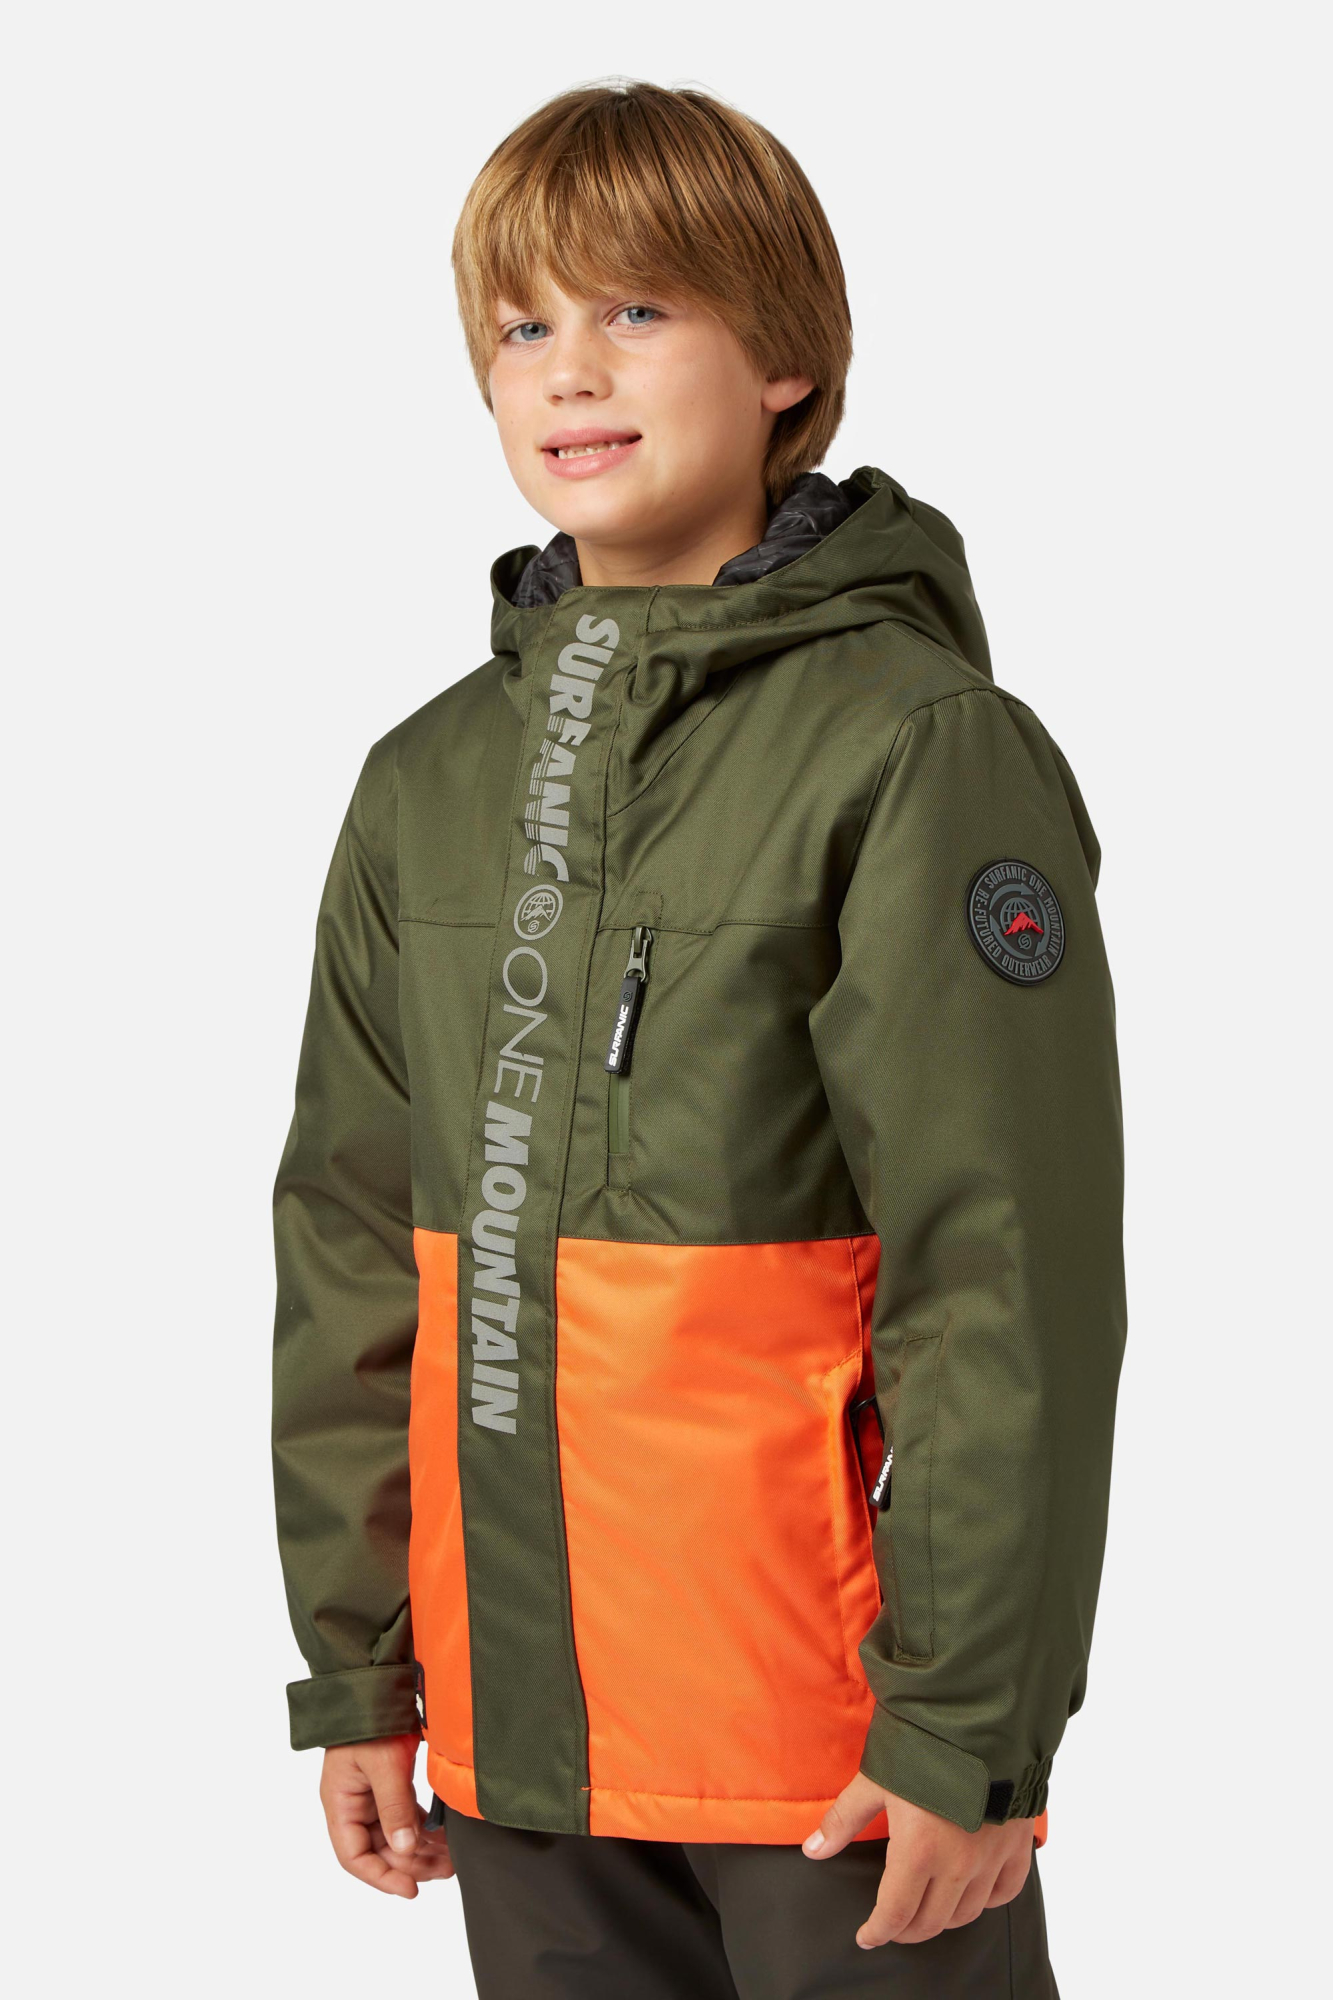 Surfanic Boys Mission Surftex Jacket Orange - Size: 8 Years